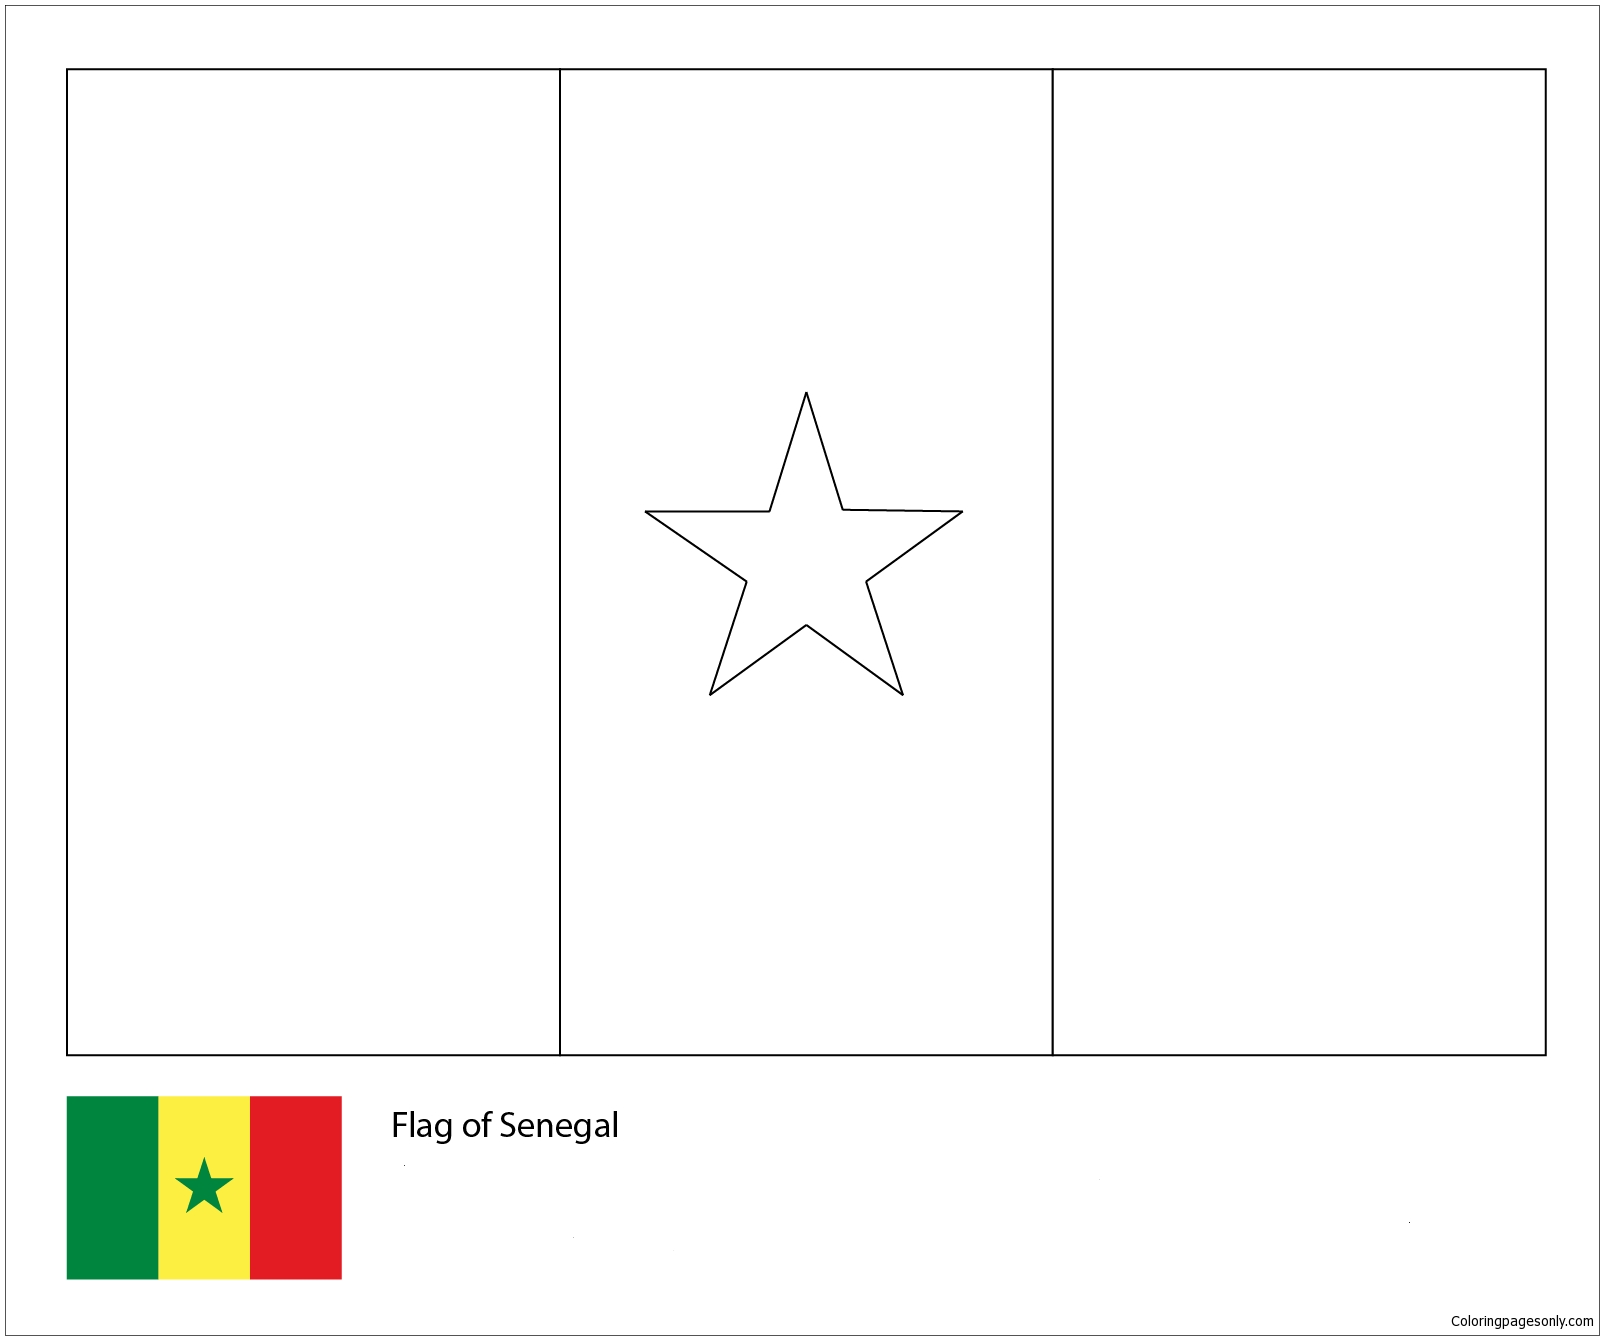 Bandeira do Senegal-Copa do Mundo 2018 from Bandeiras da Copa do Mundo 2018